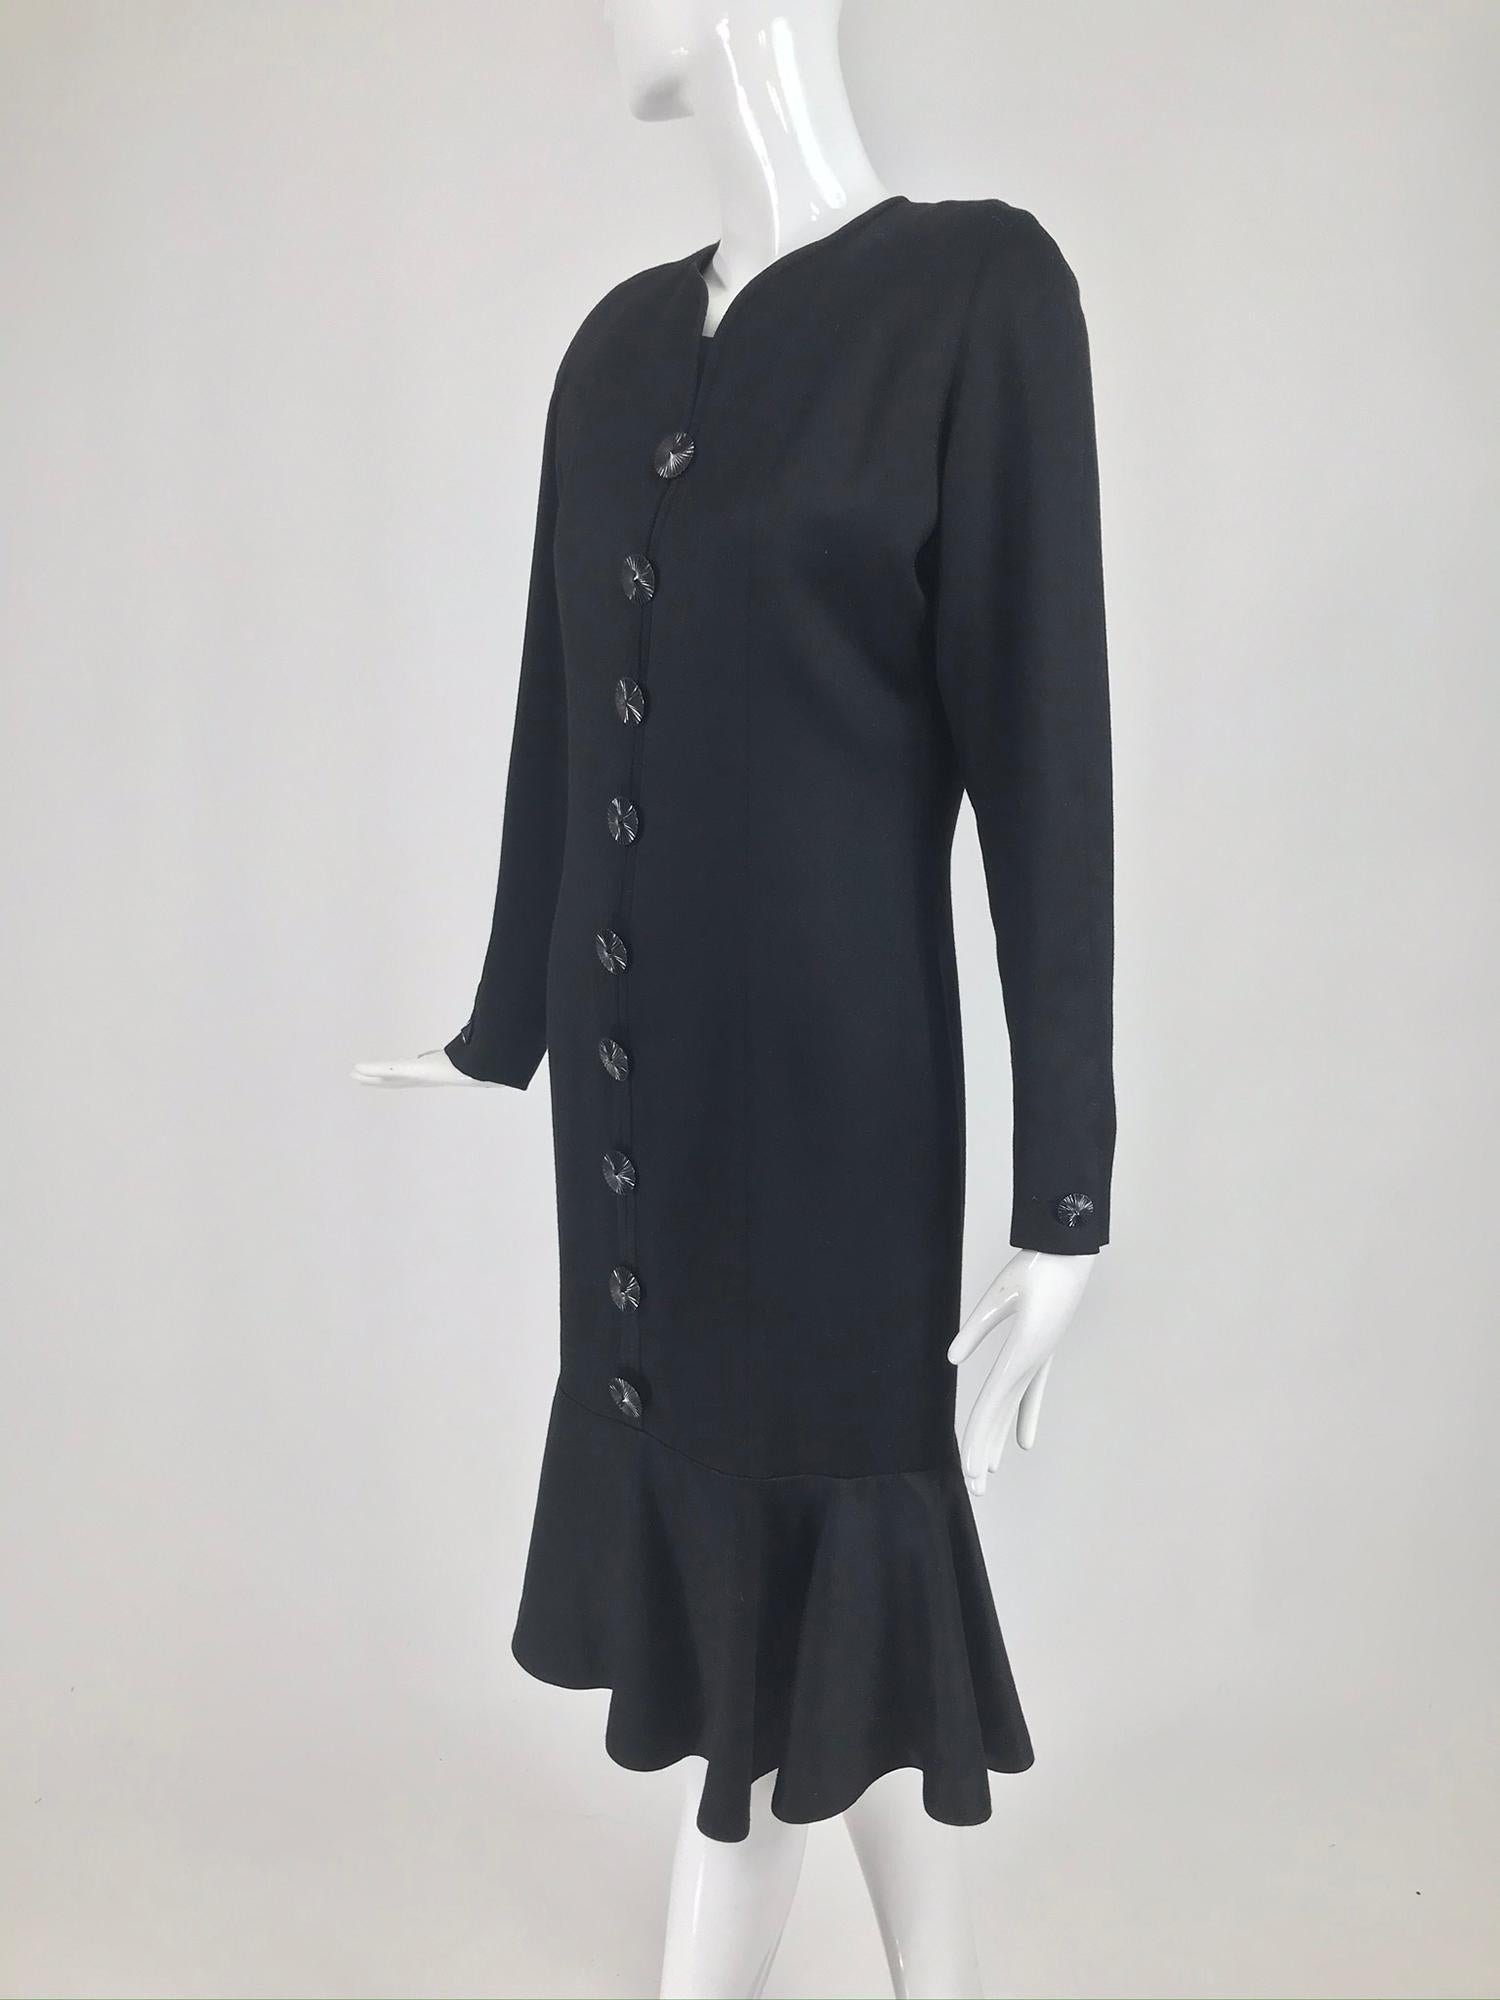 Nina Ricci Black Wool Semi Fitted Dress with Flared Hem 1980s  6